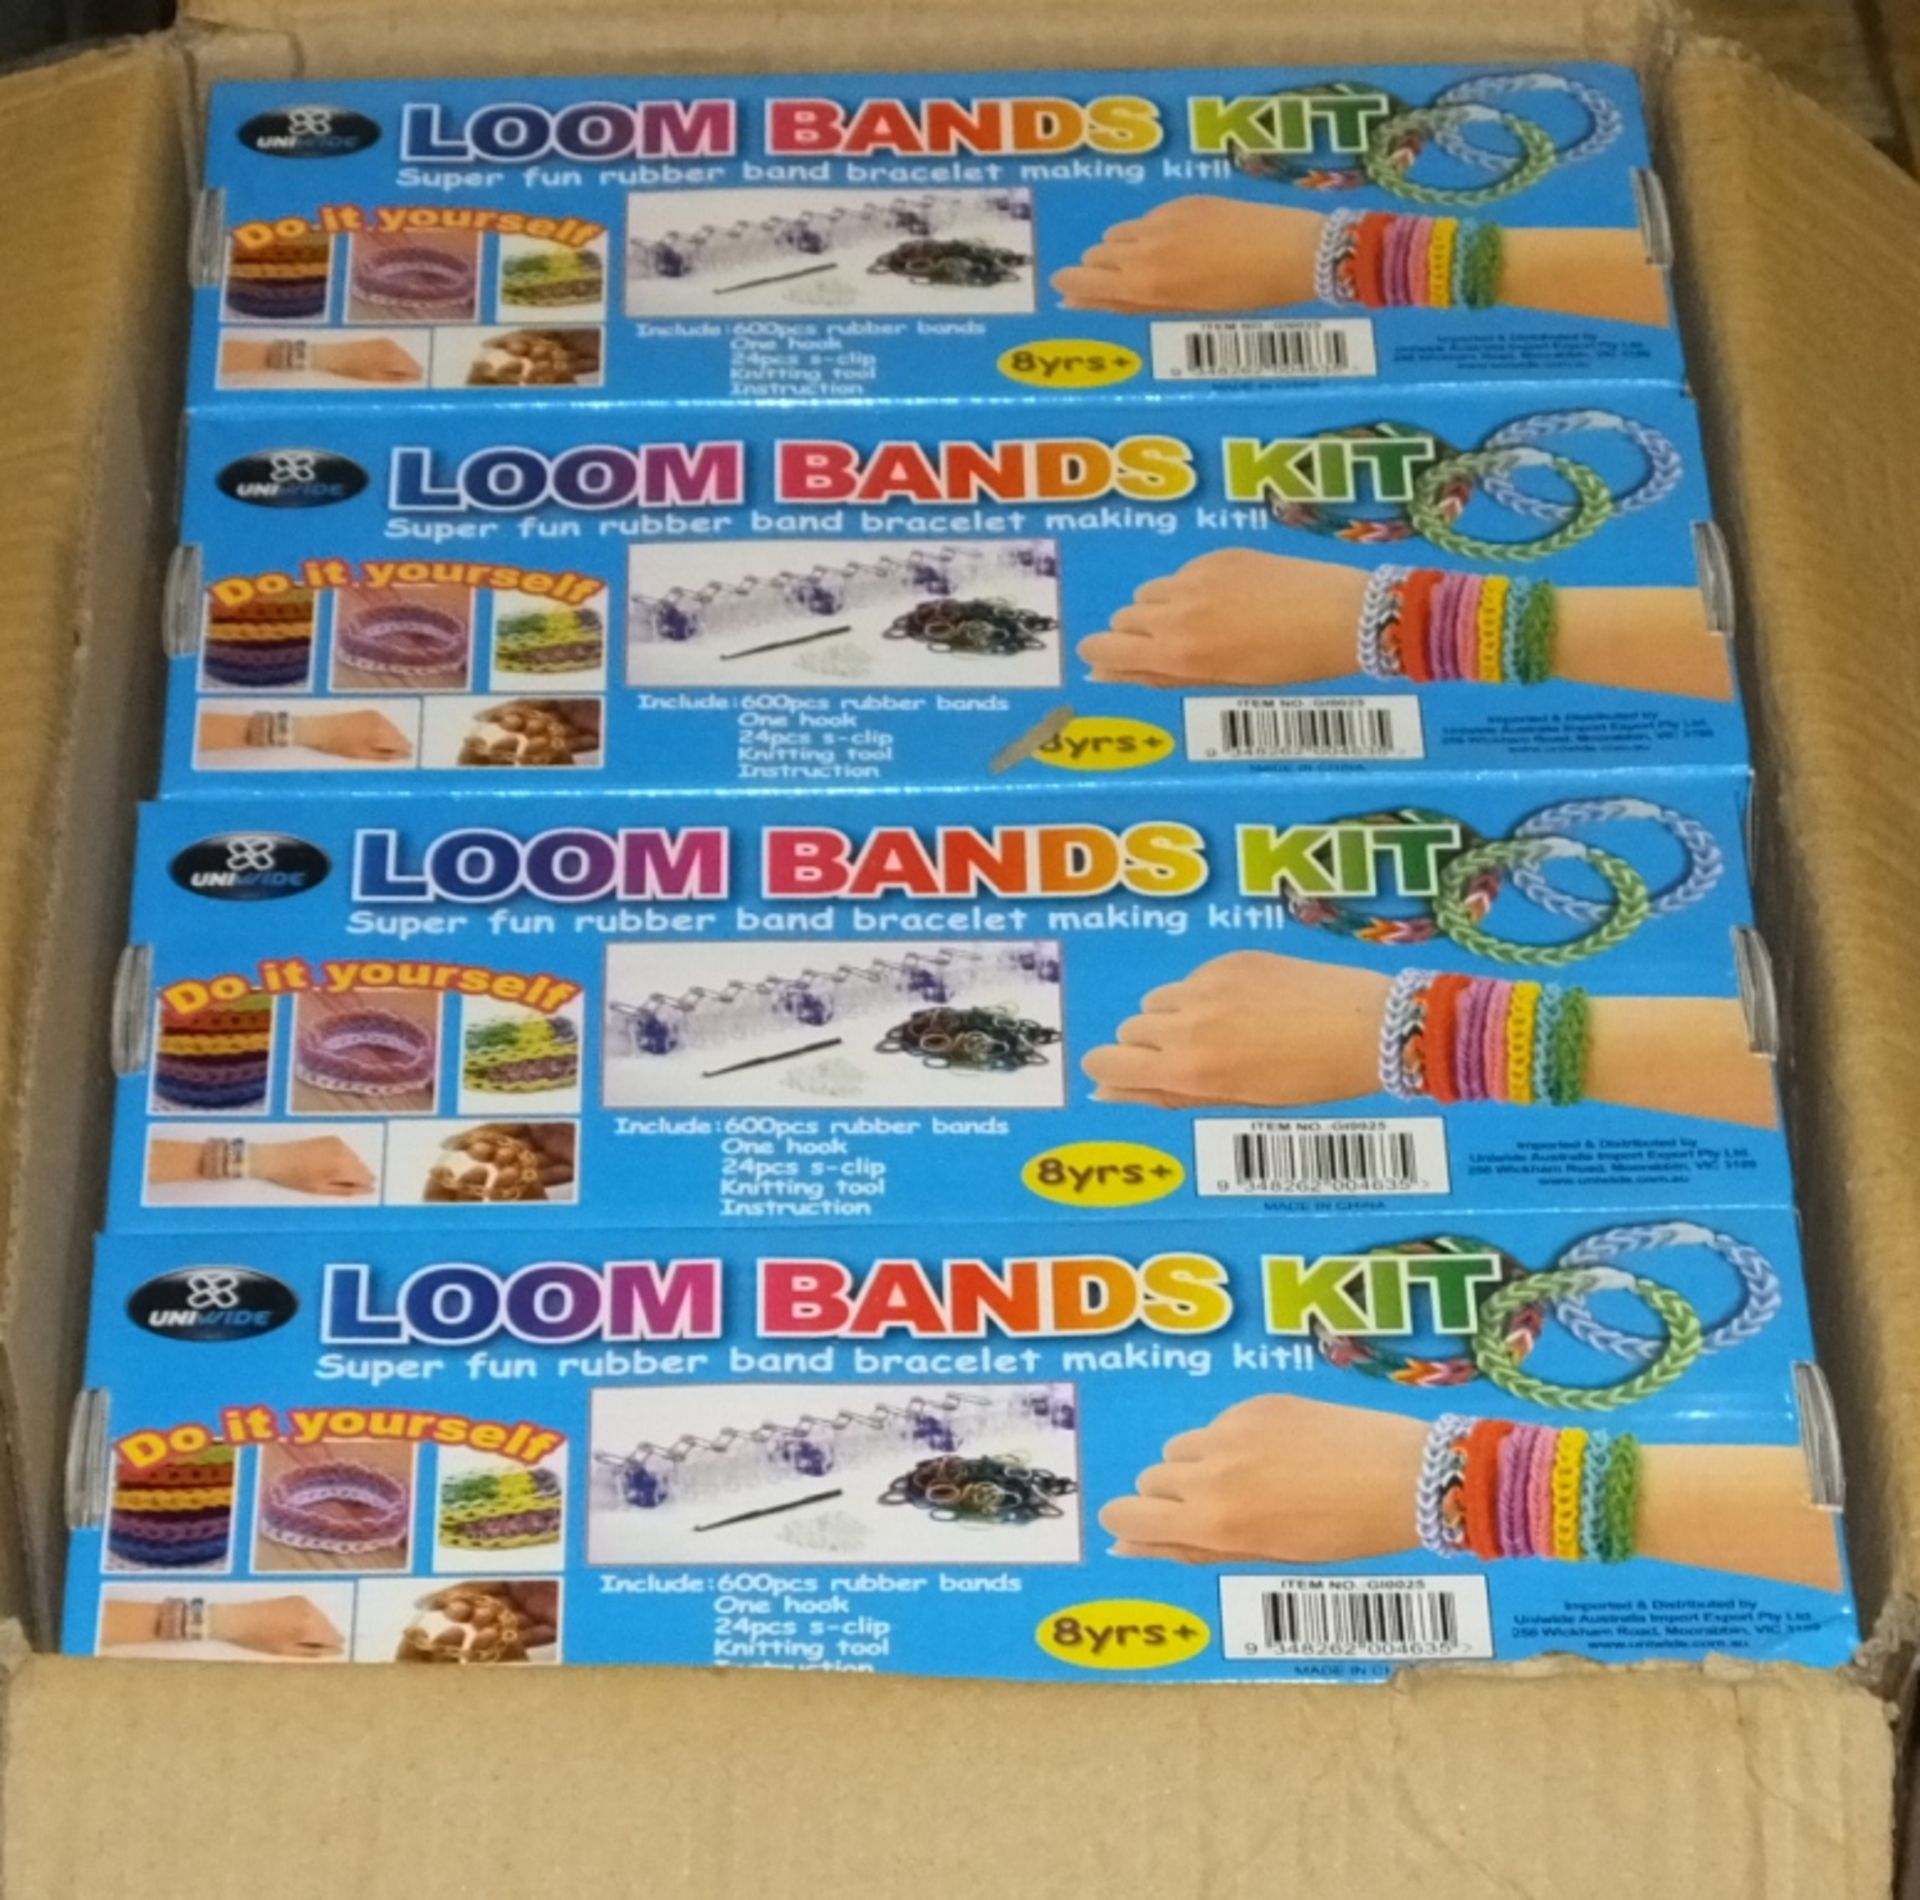 Loom band kits - 100 per box - 5 boxes, 480 per box - 4 boxes - Image 2 of 3